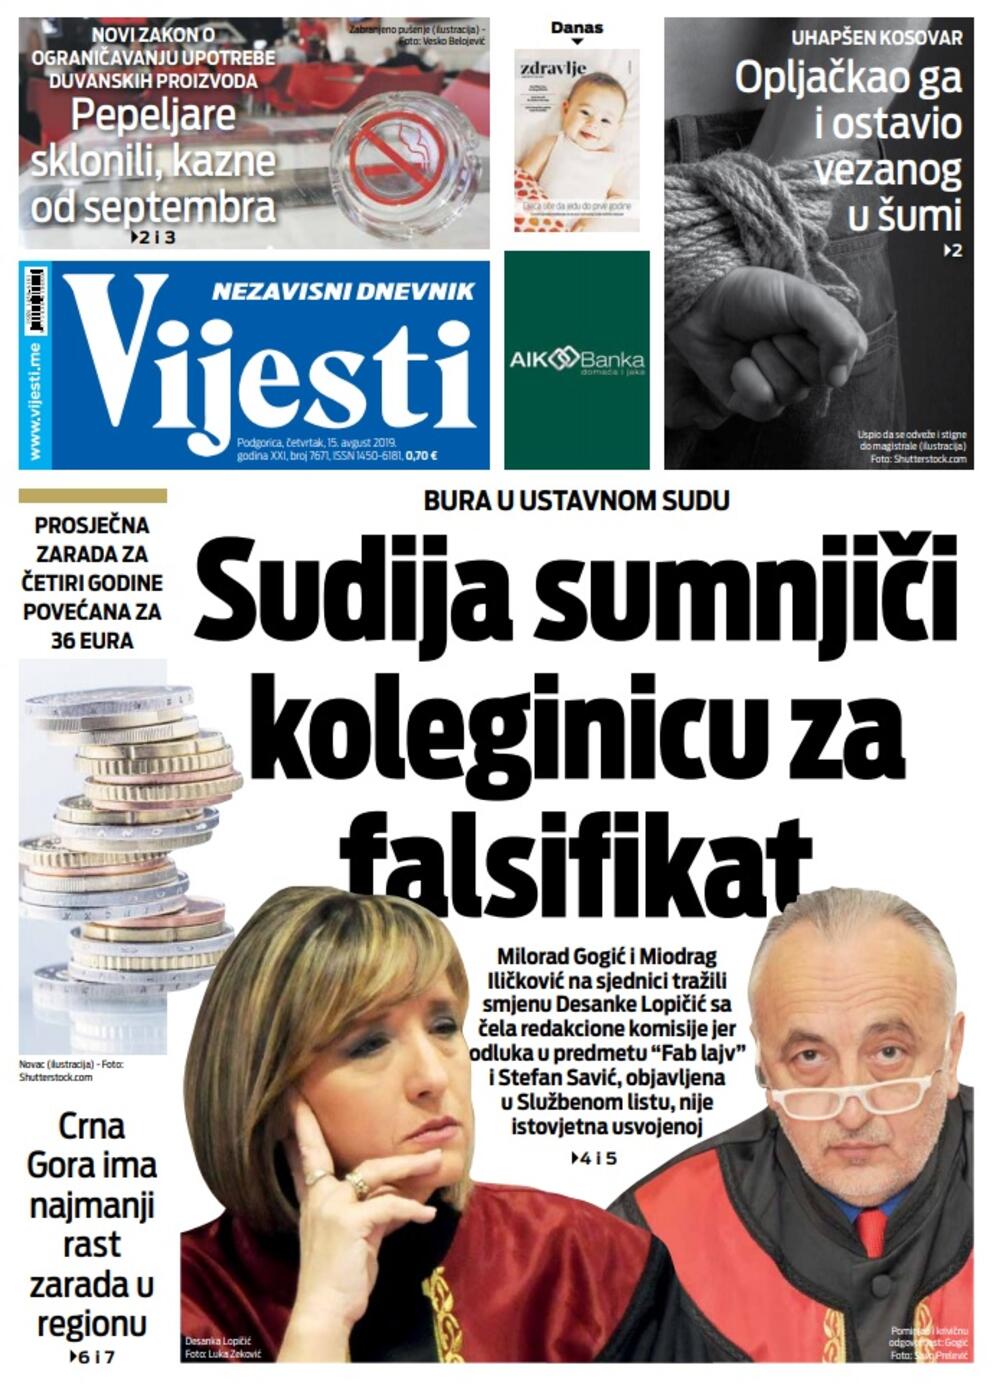 Naslovna strana "Vijesti" za četvrtak 15. avgust, Foto: Vijesti